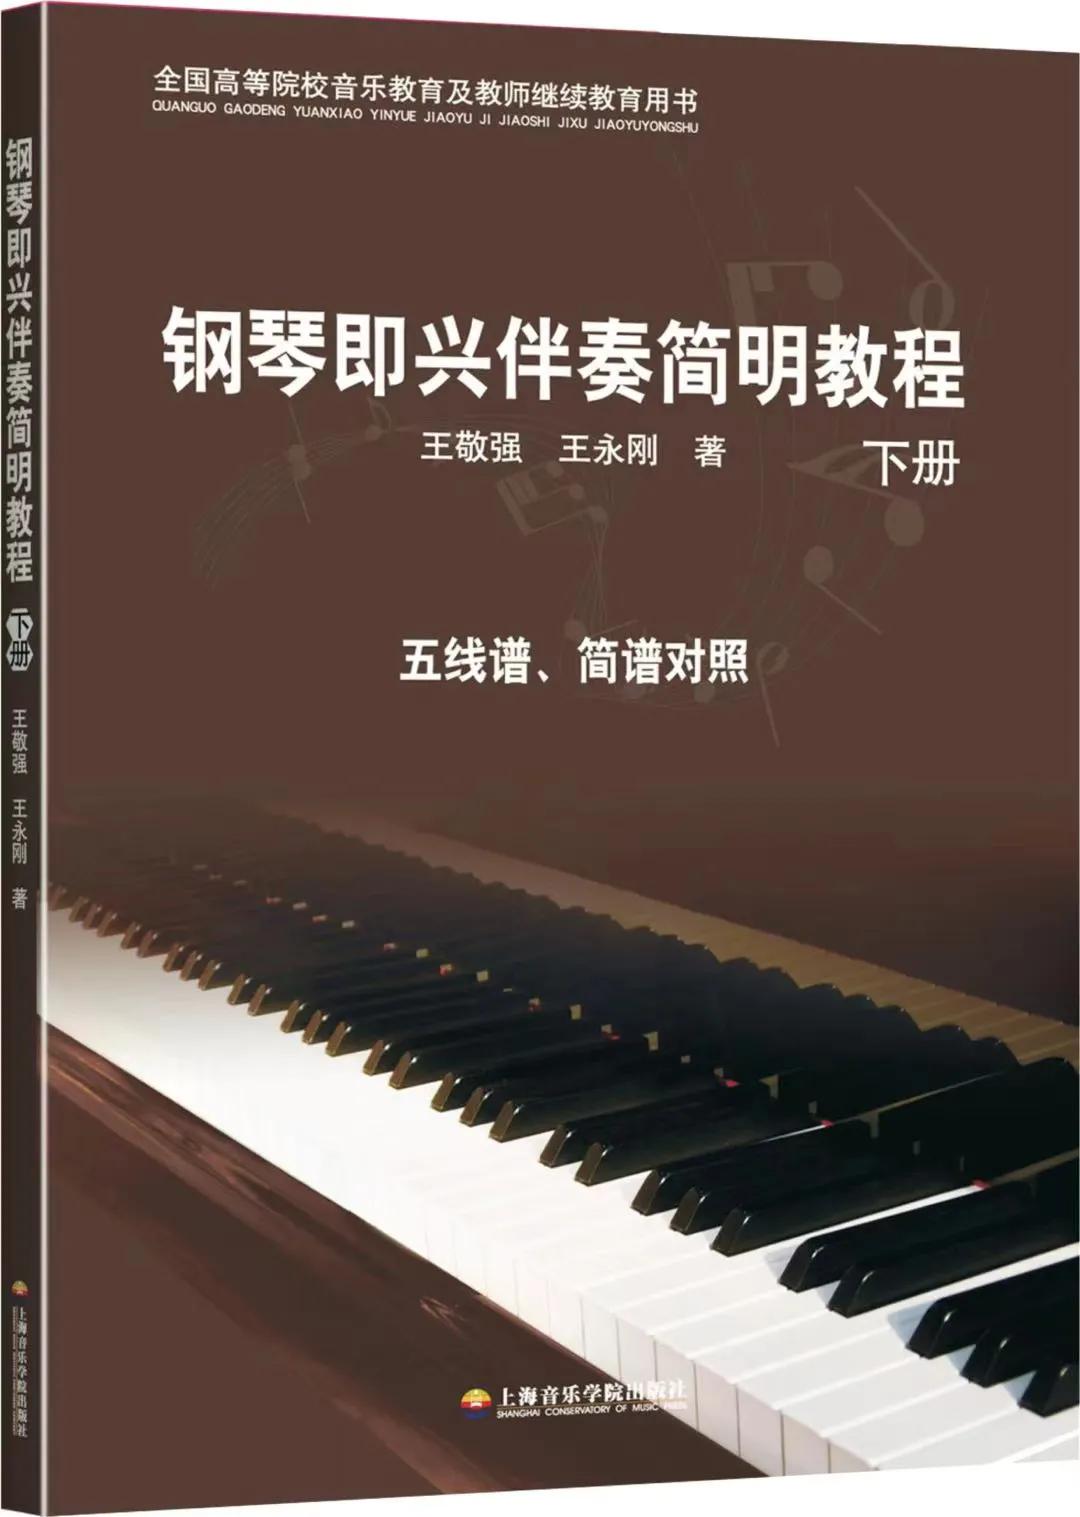 “文化润疆”一一王敬强新编钢琴即兴伴奏教材 出版全国发行